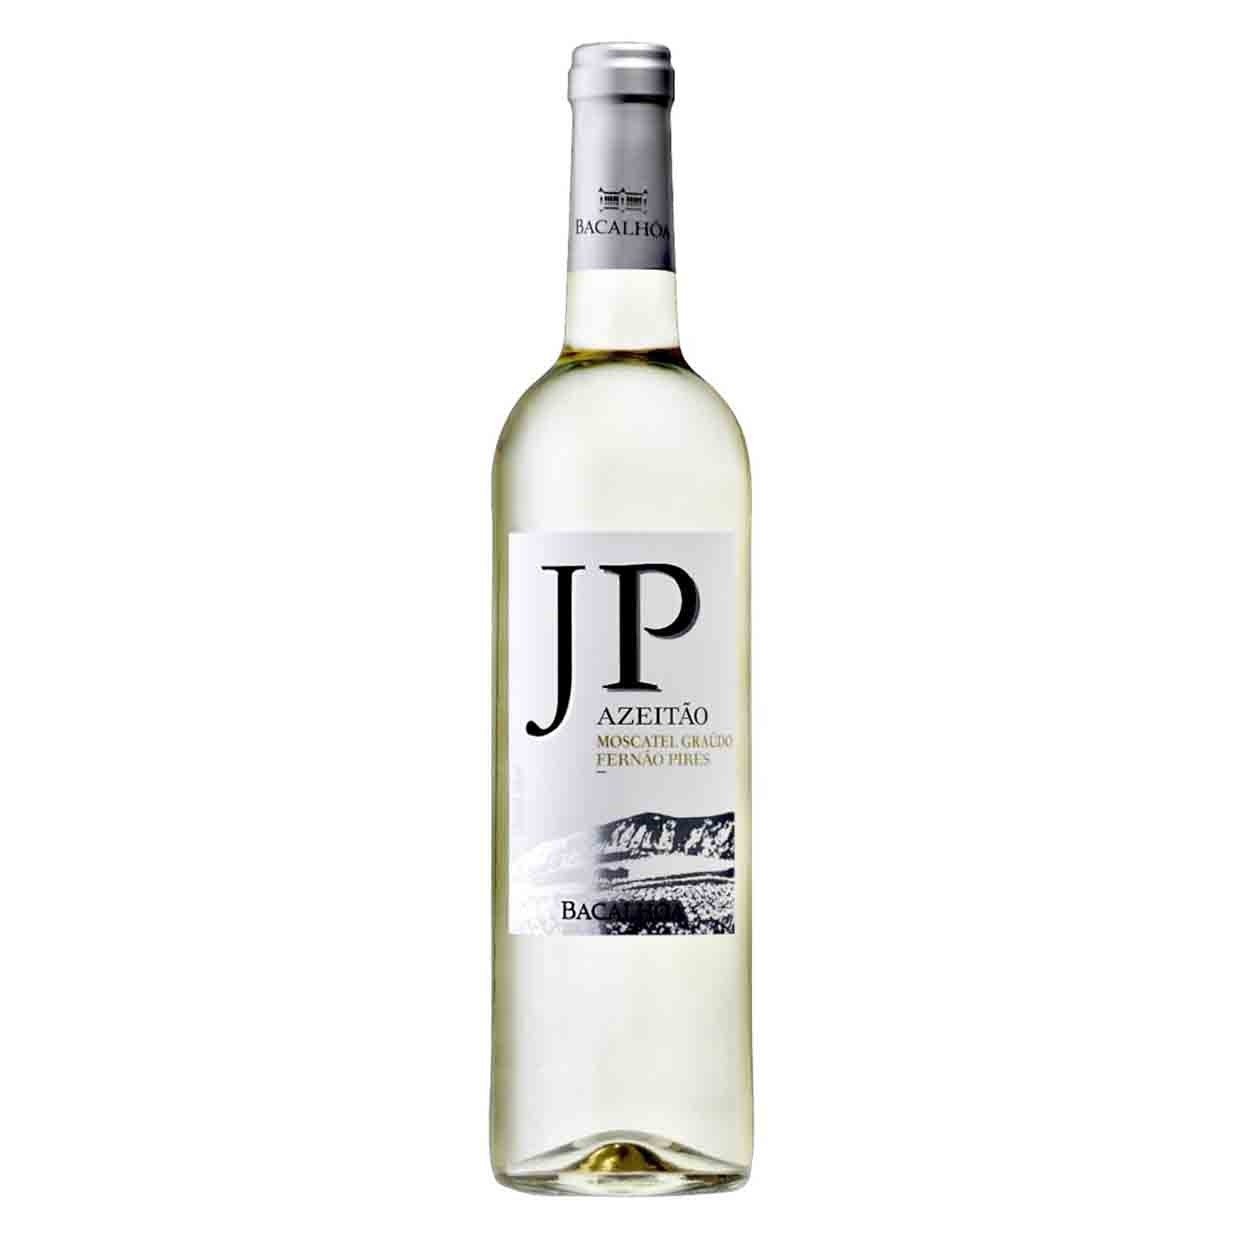 Вино Bacalhoa JP Azeitao Branco, белое, сухое, 13%, 0,75 л (8000018967846) - фото 1